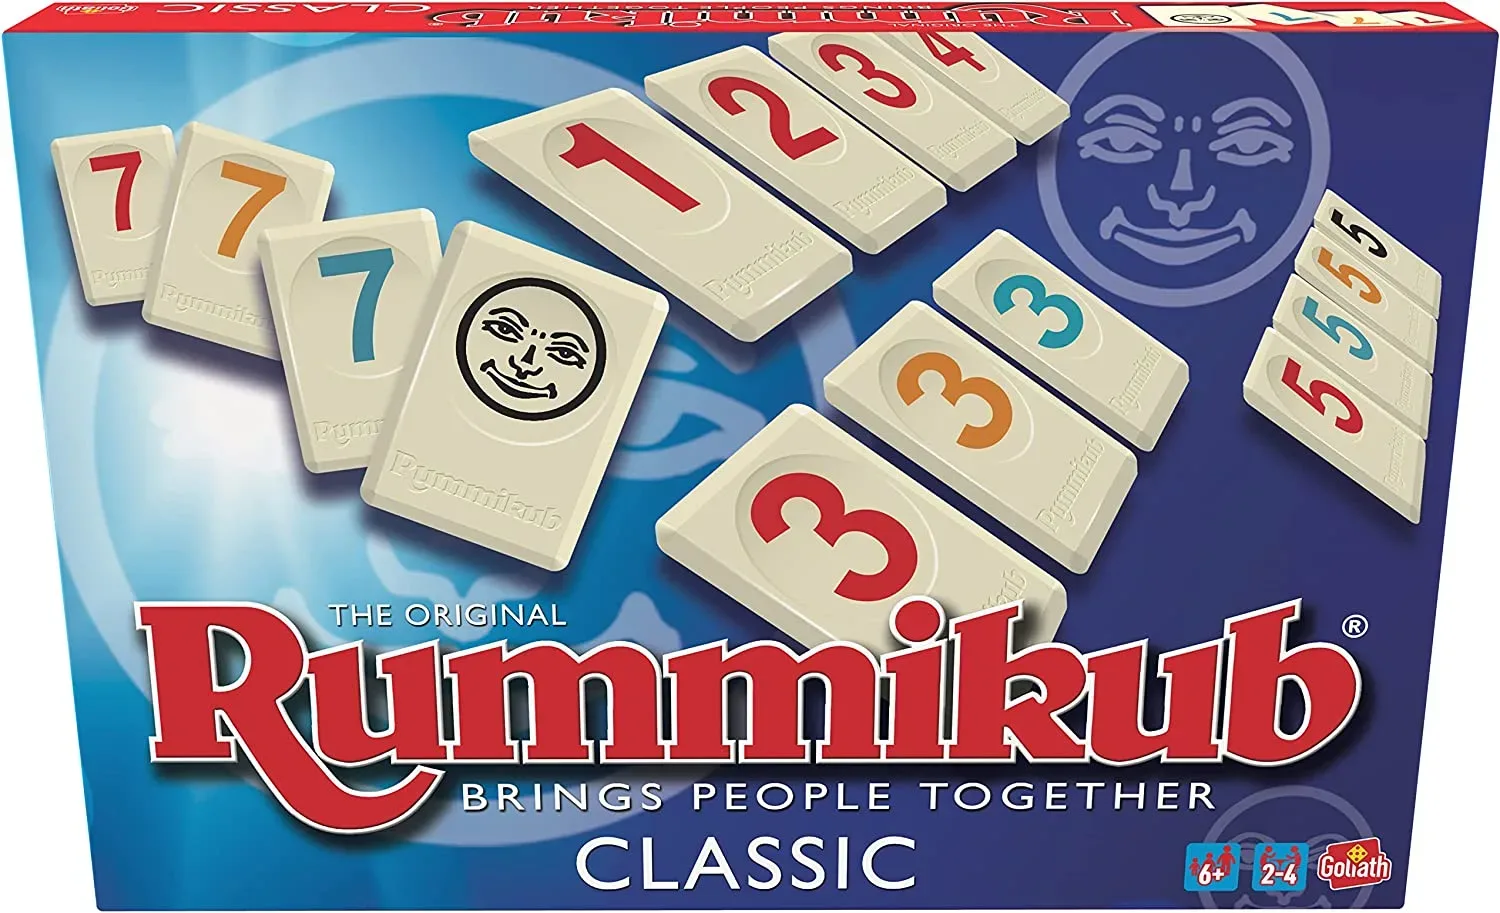 Ver categoría de rummikub original classic